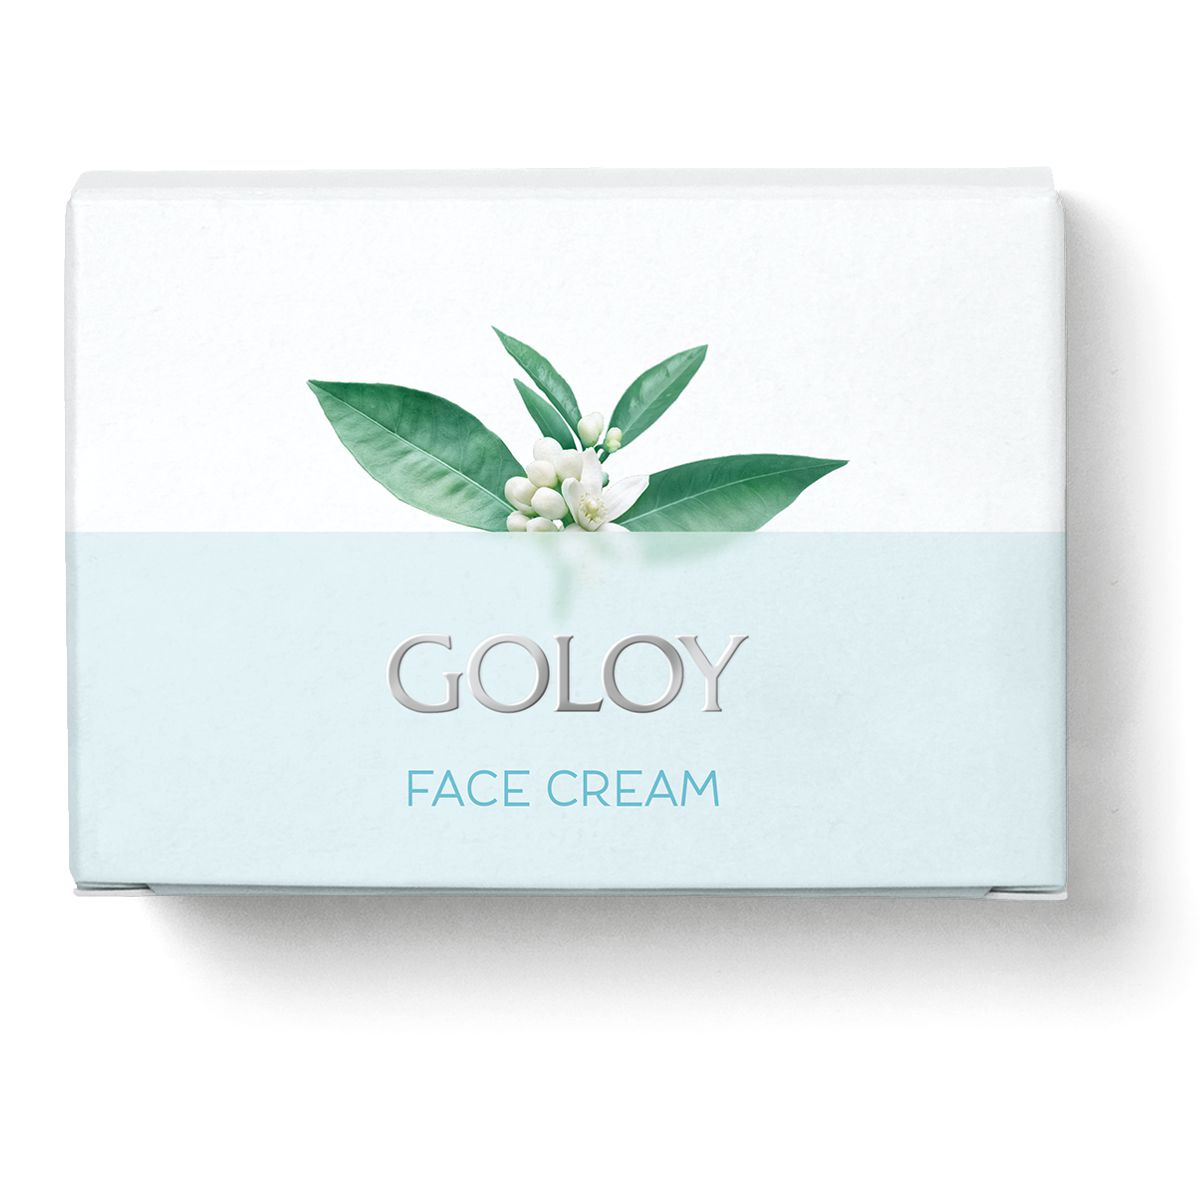 Goloy Face Cream - versorgt Ihre Haut mit neuer Energie und wertvollen Nährstoffen für eine natürliche Strahlkraft. 